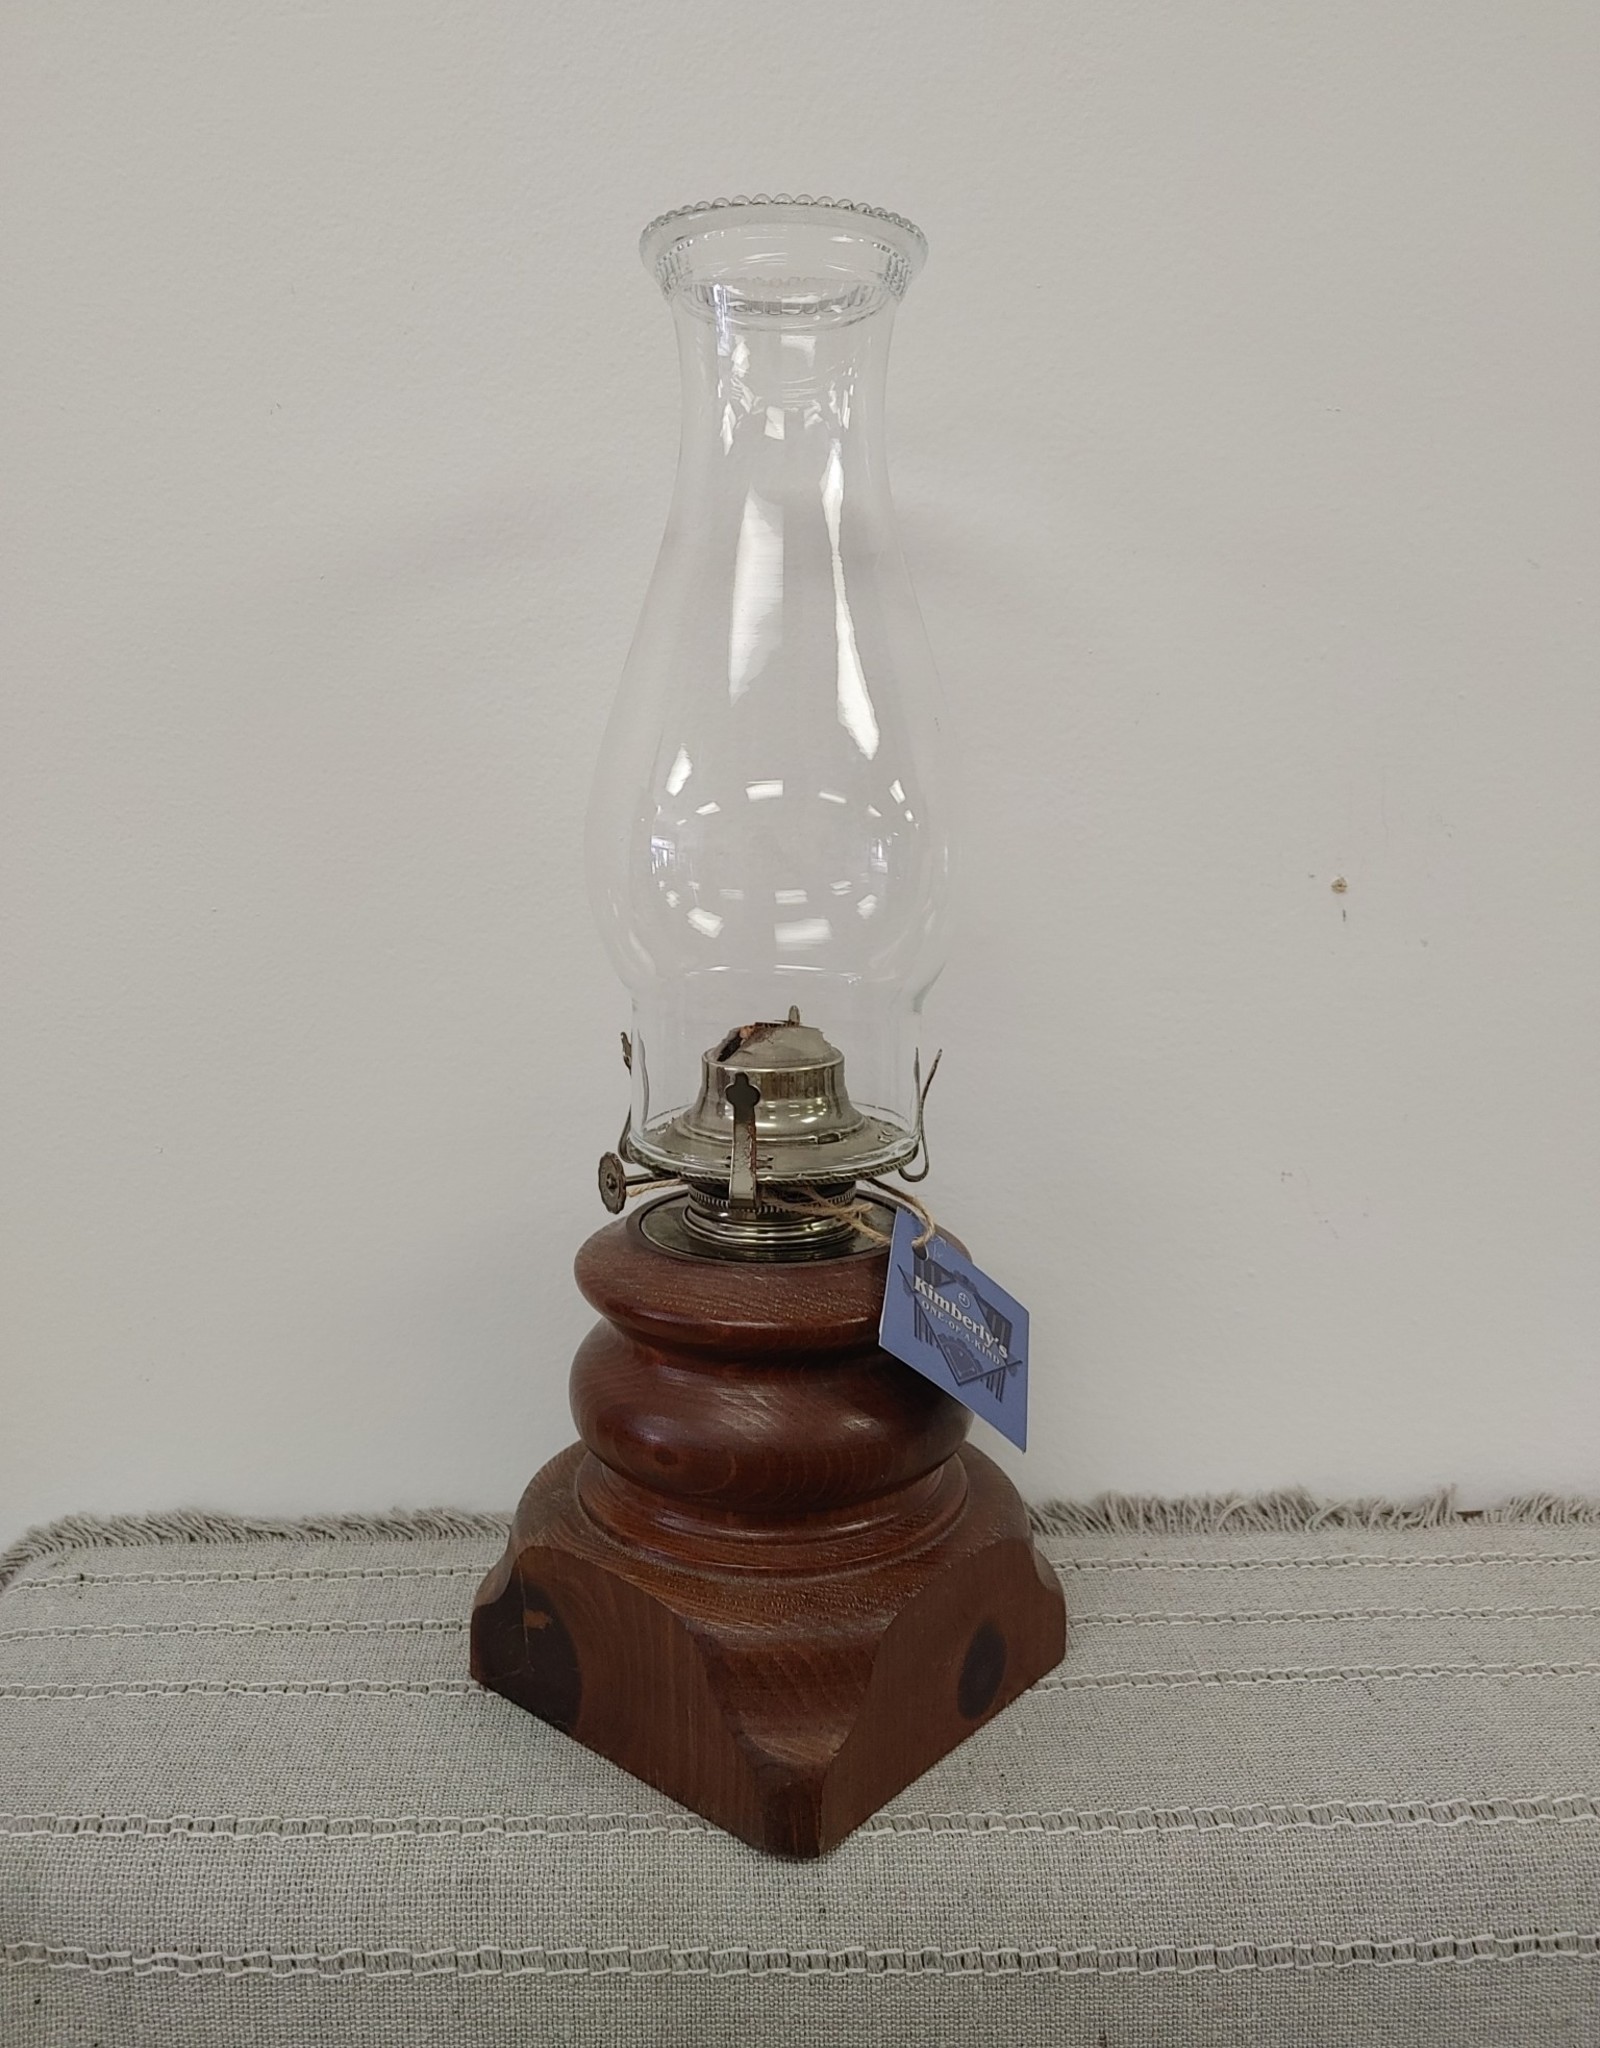 Oil Lamp -wooden base